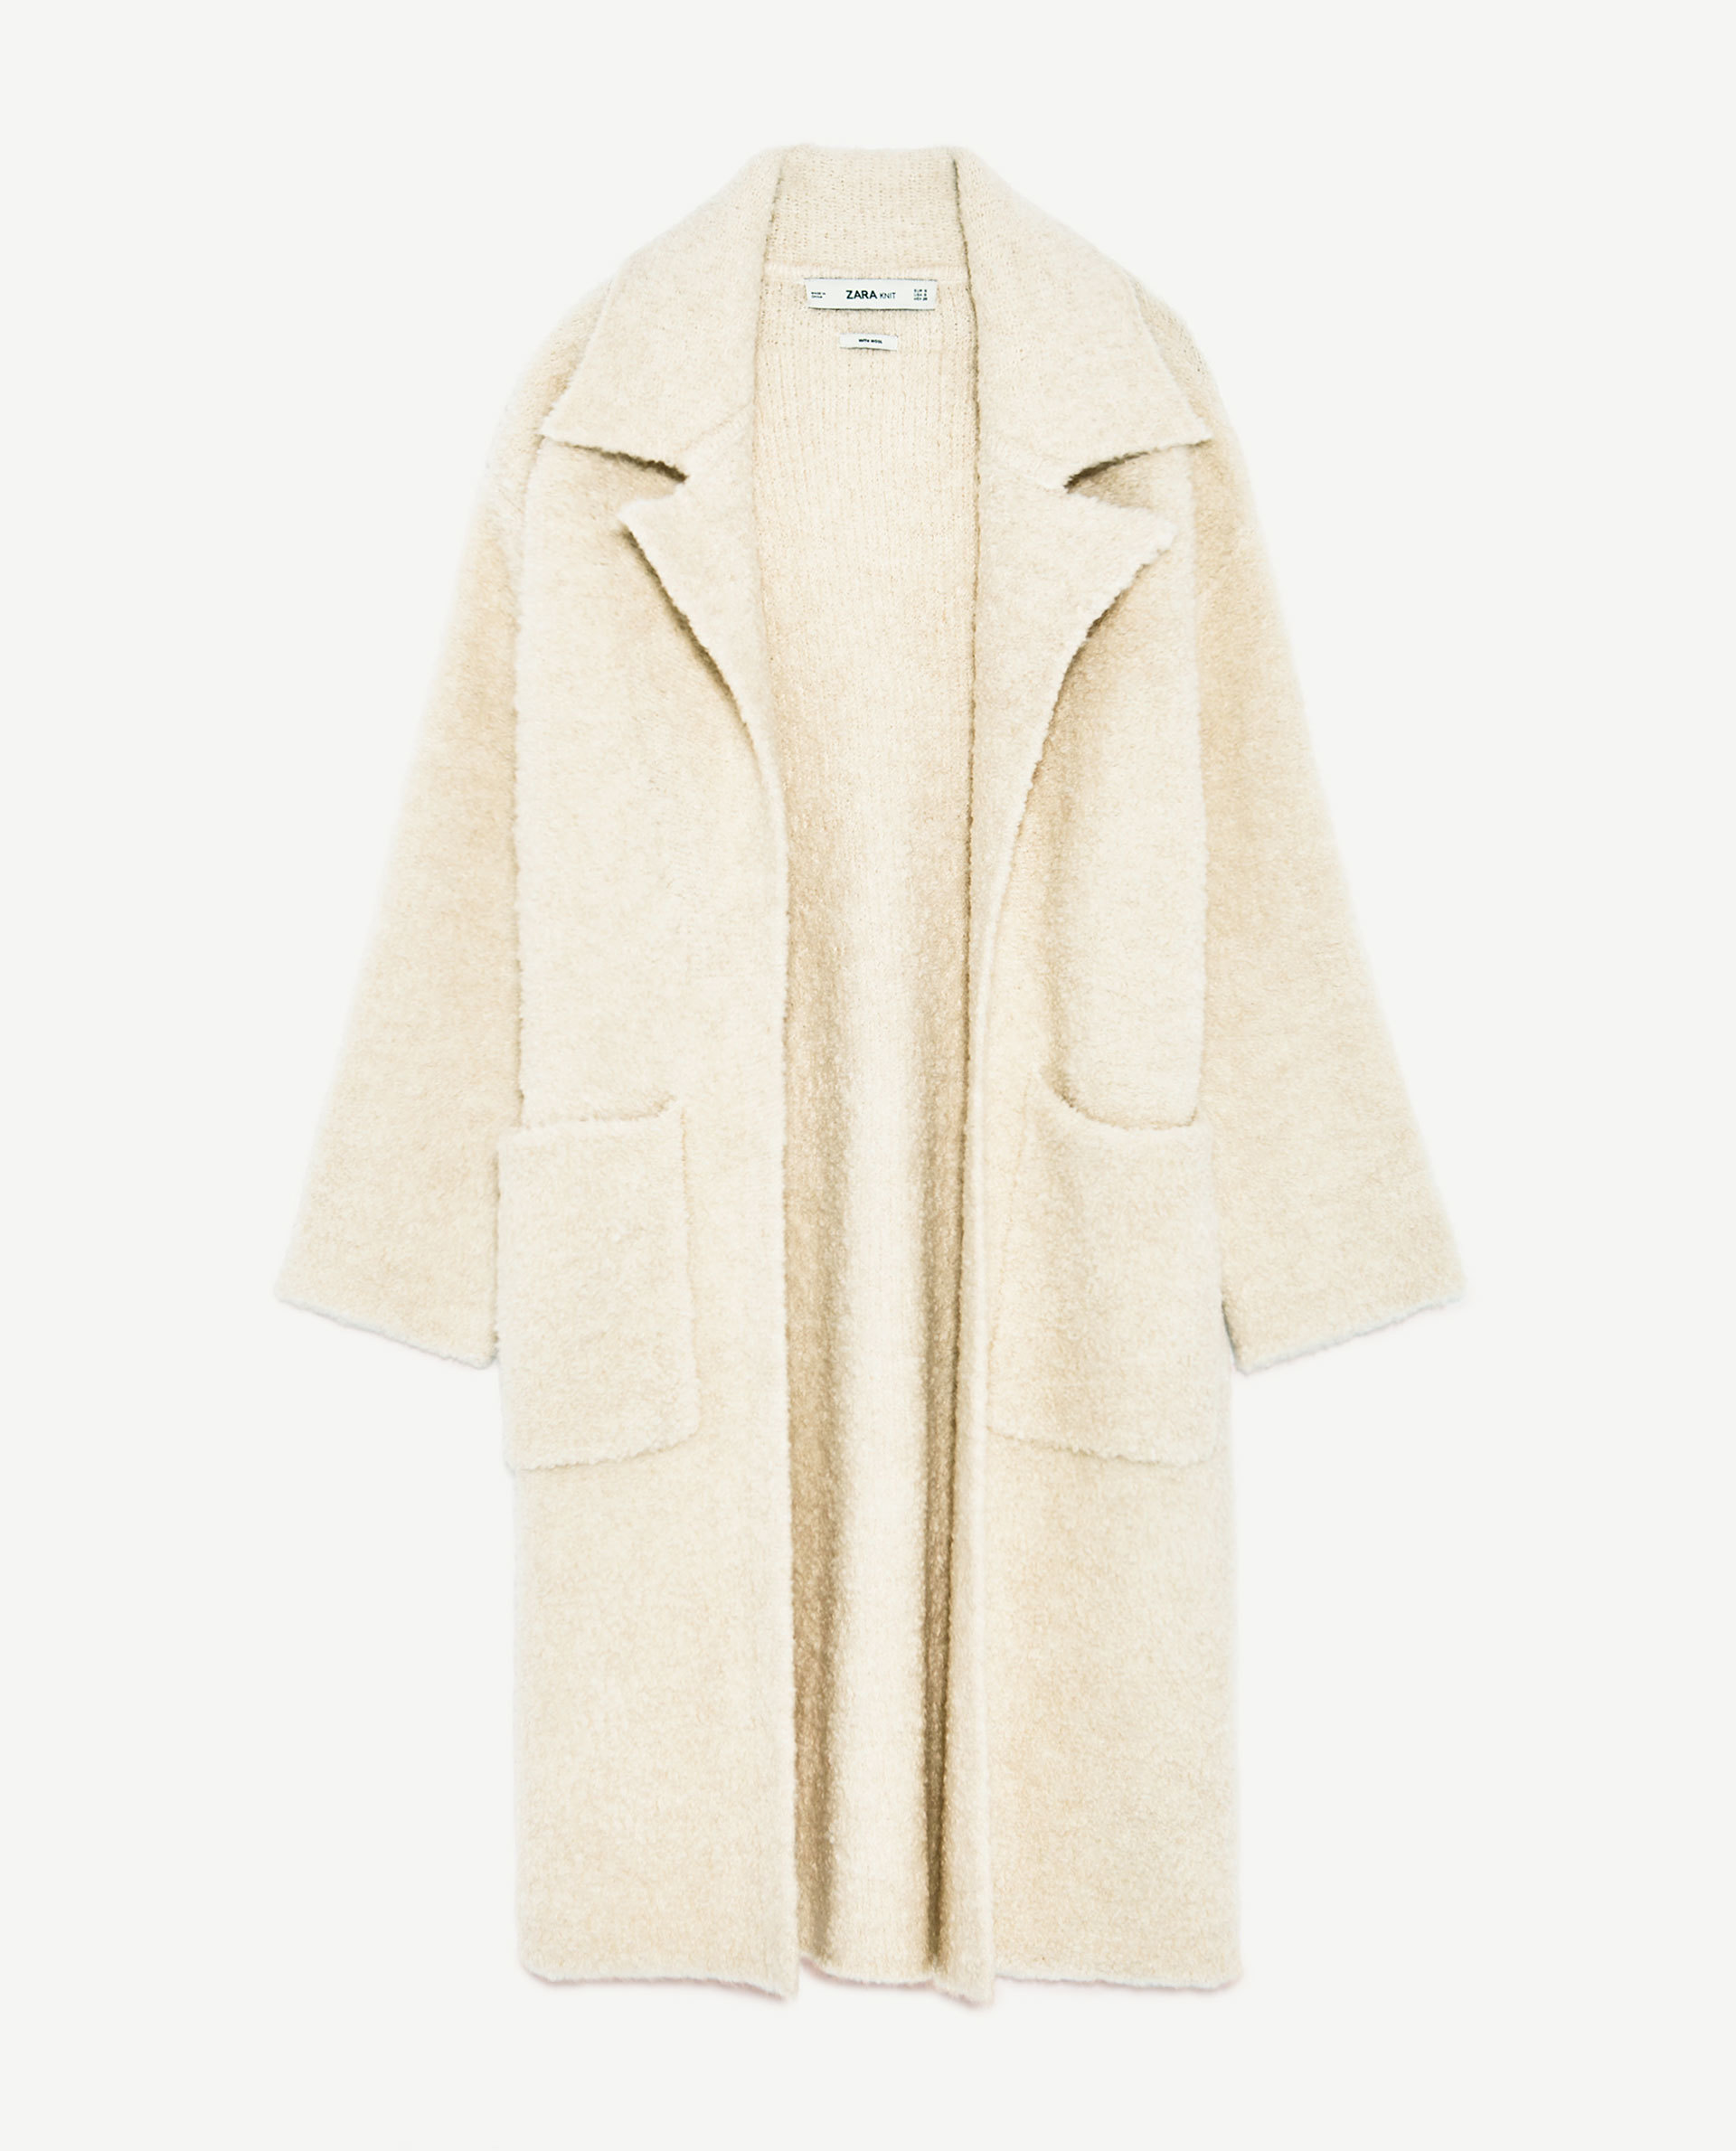 Abrigo soft de punto. De Zara, (59,95 euros).